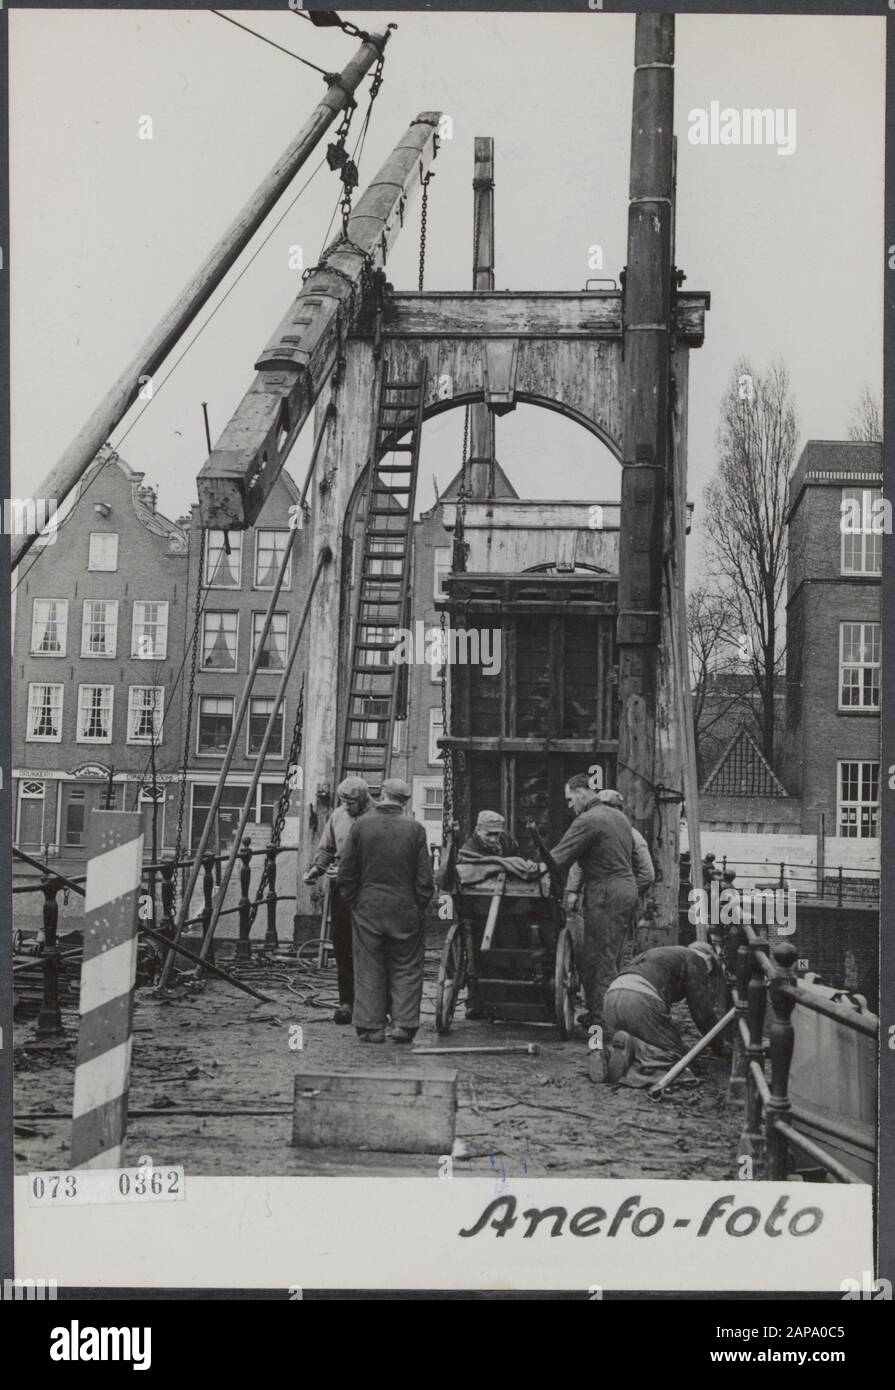 Bridge è demolito per una nuova Data: 26 Marzo 1952 Località: Amsterdam, Noord-Holland Parole Chiave: Demolizione, lavoro, ponti Nome personale: Wootenbrug The Foto Stock